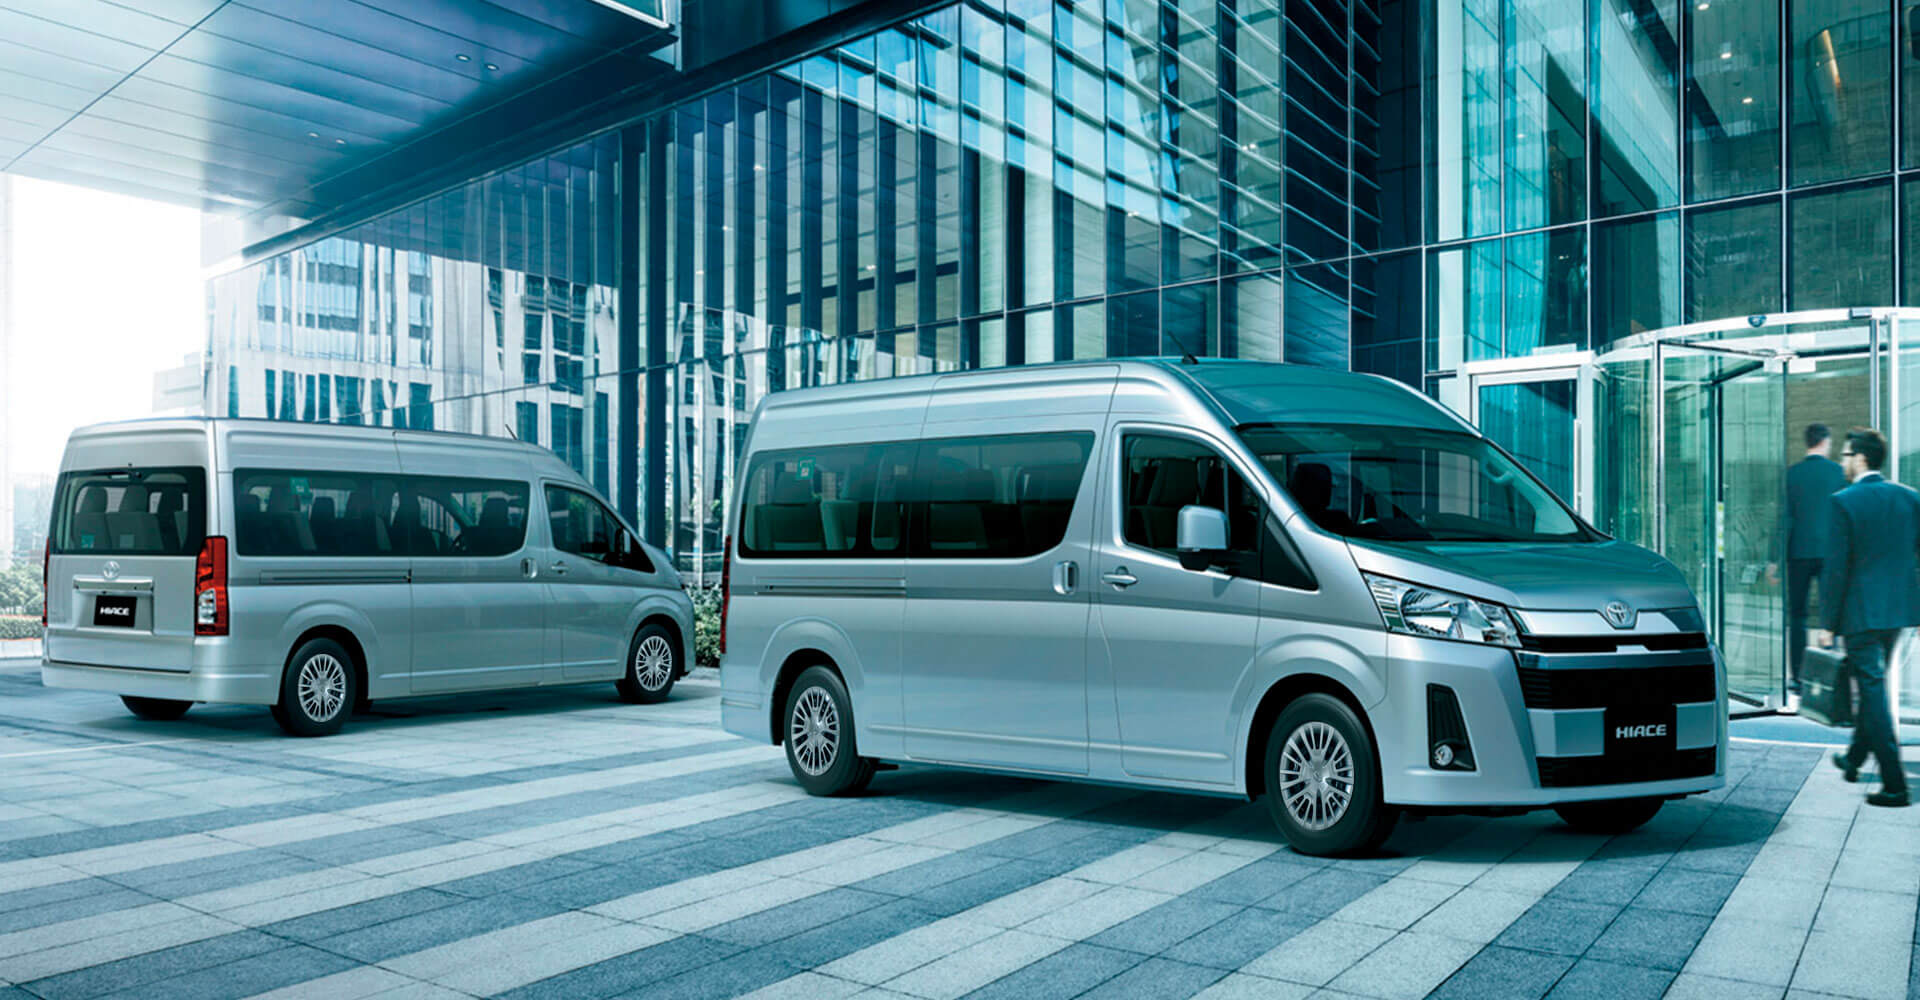 Conoce las cualidades y características de Toyota Hiace Microbus Toyota